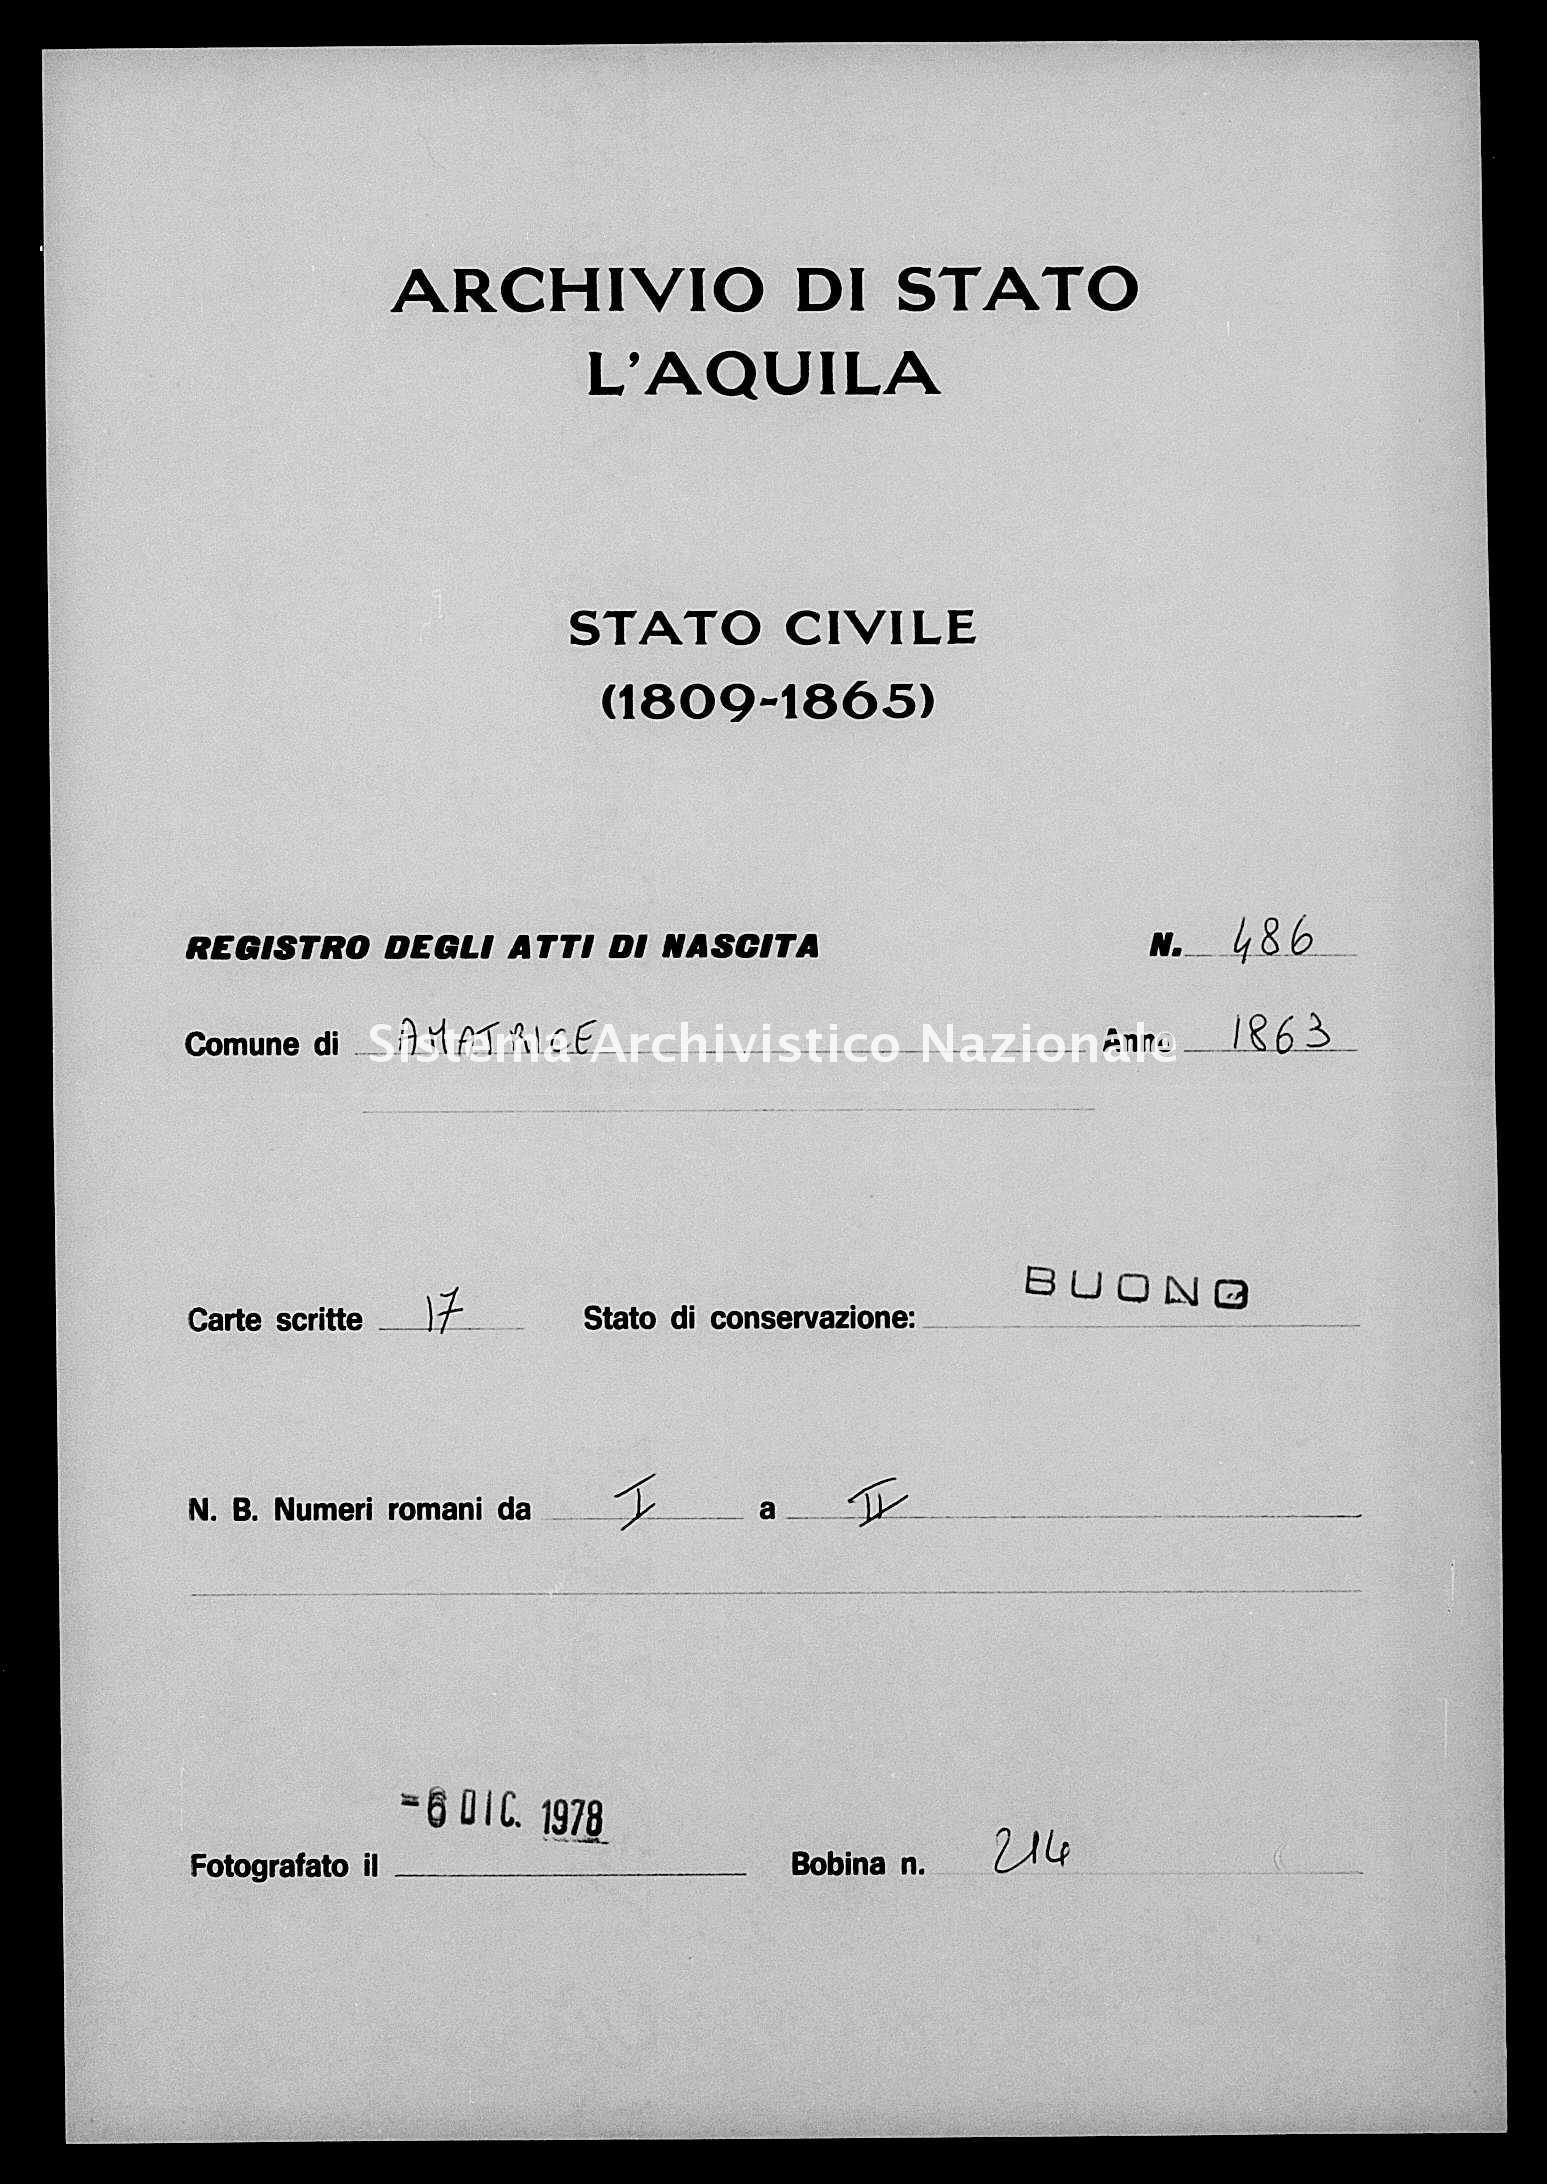 Archivio di stato di L'aquila - Stato civile italiano - Amatrice - Nati - 1863 - 486 -